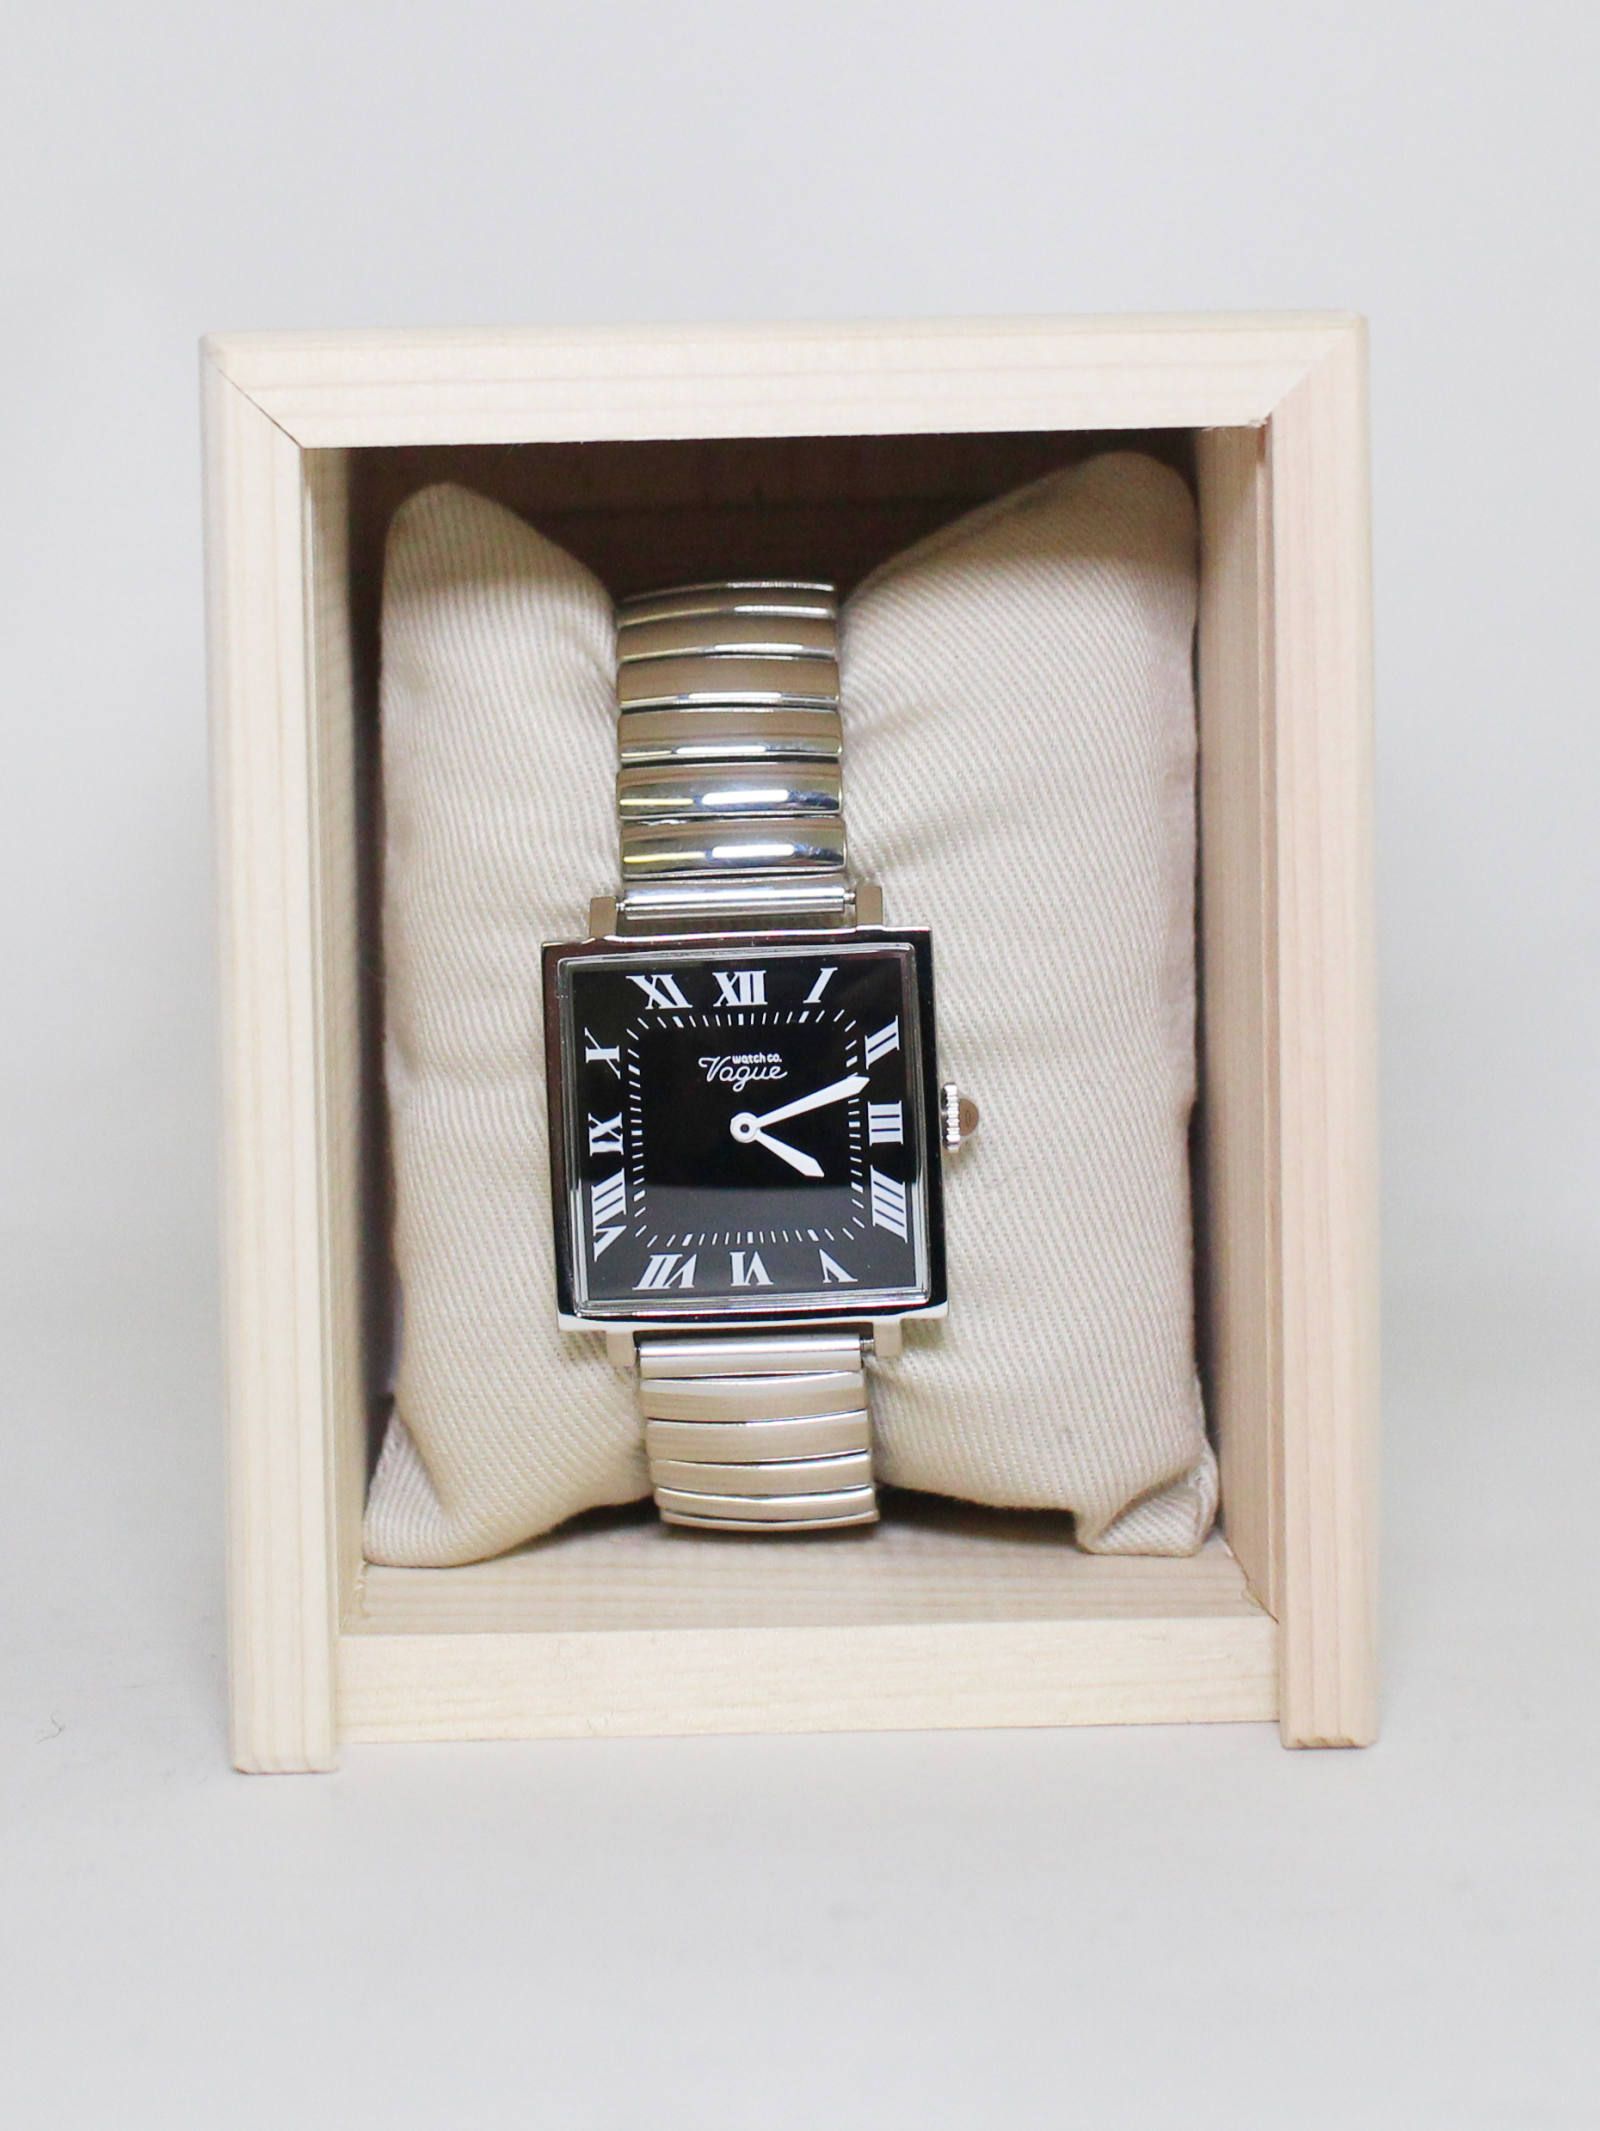 Carré ( カレ ) Extension BELT - クオーツ式腕時計 - S (ユニセックス) - シルバー / シャンパン